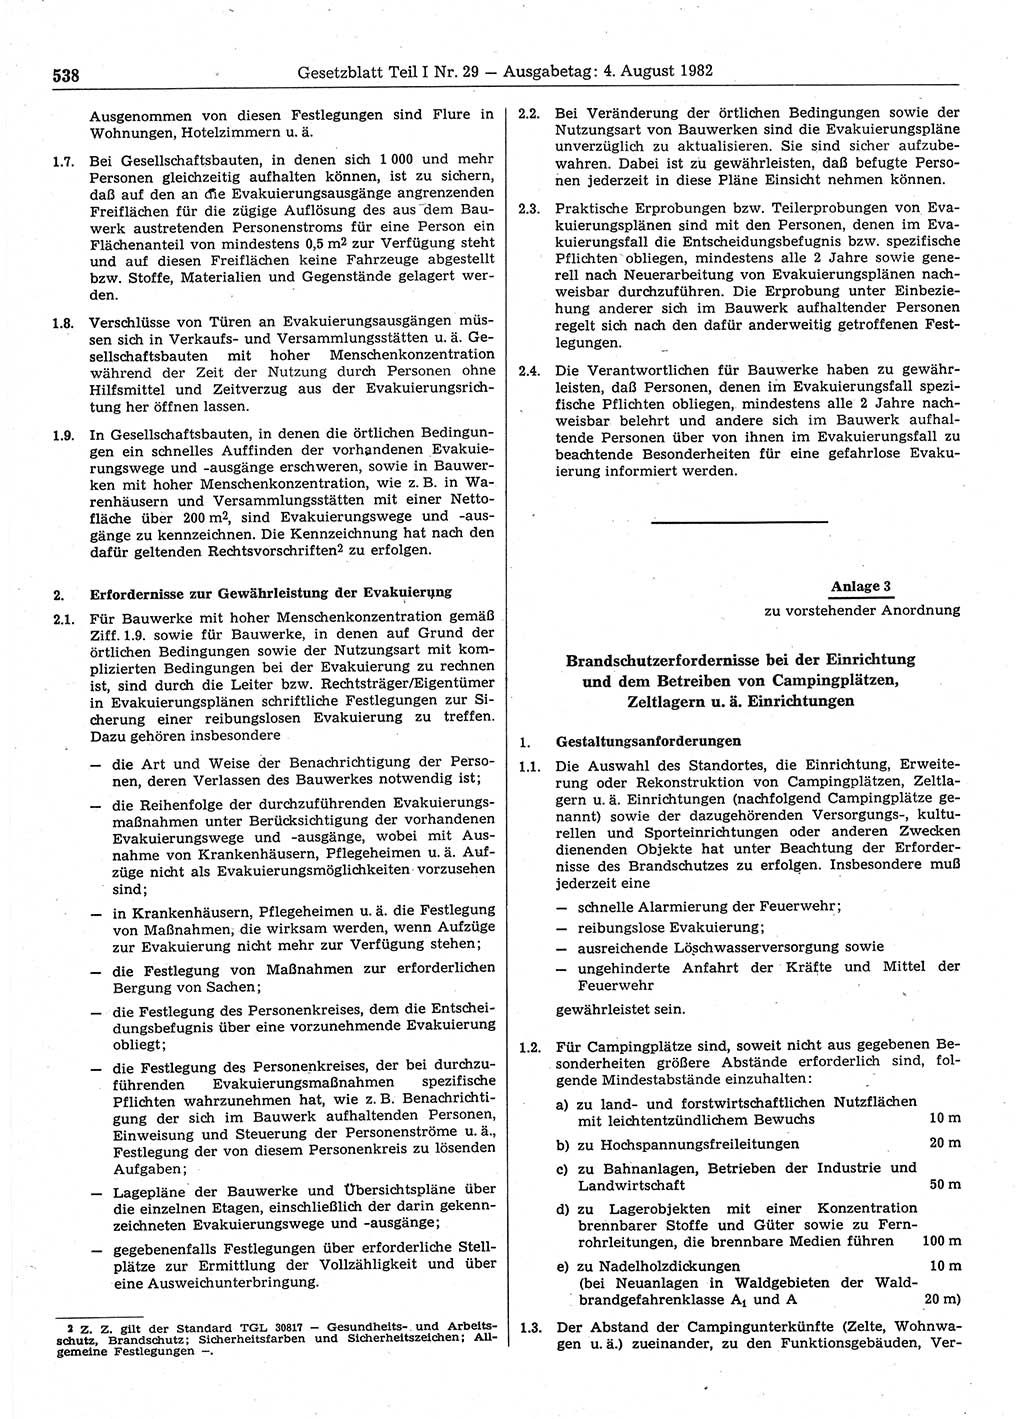 Gesetzblatt (GBl.) der Deutschen Demokratischen Republik (DDR) Teil Ⅰ 1982, Seite 538 (GBl. DDR Ⅰ 1982, S. 538)